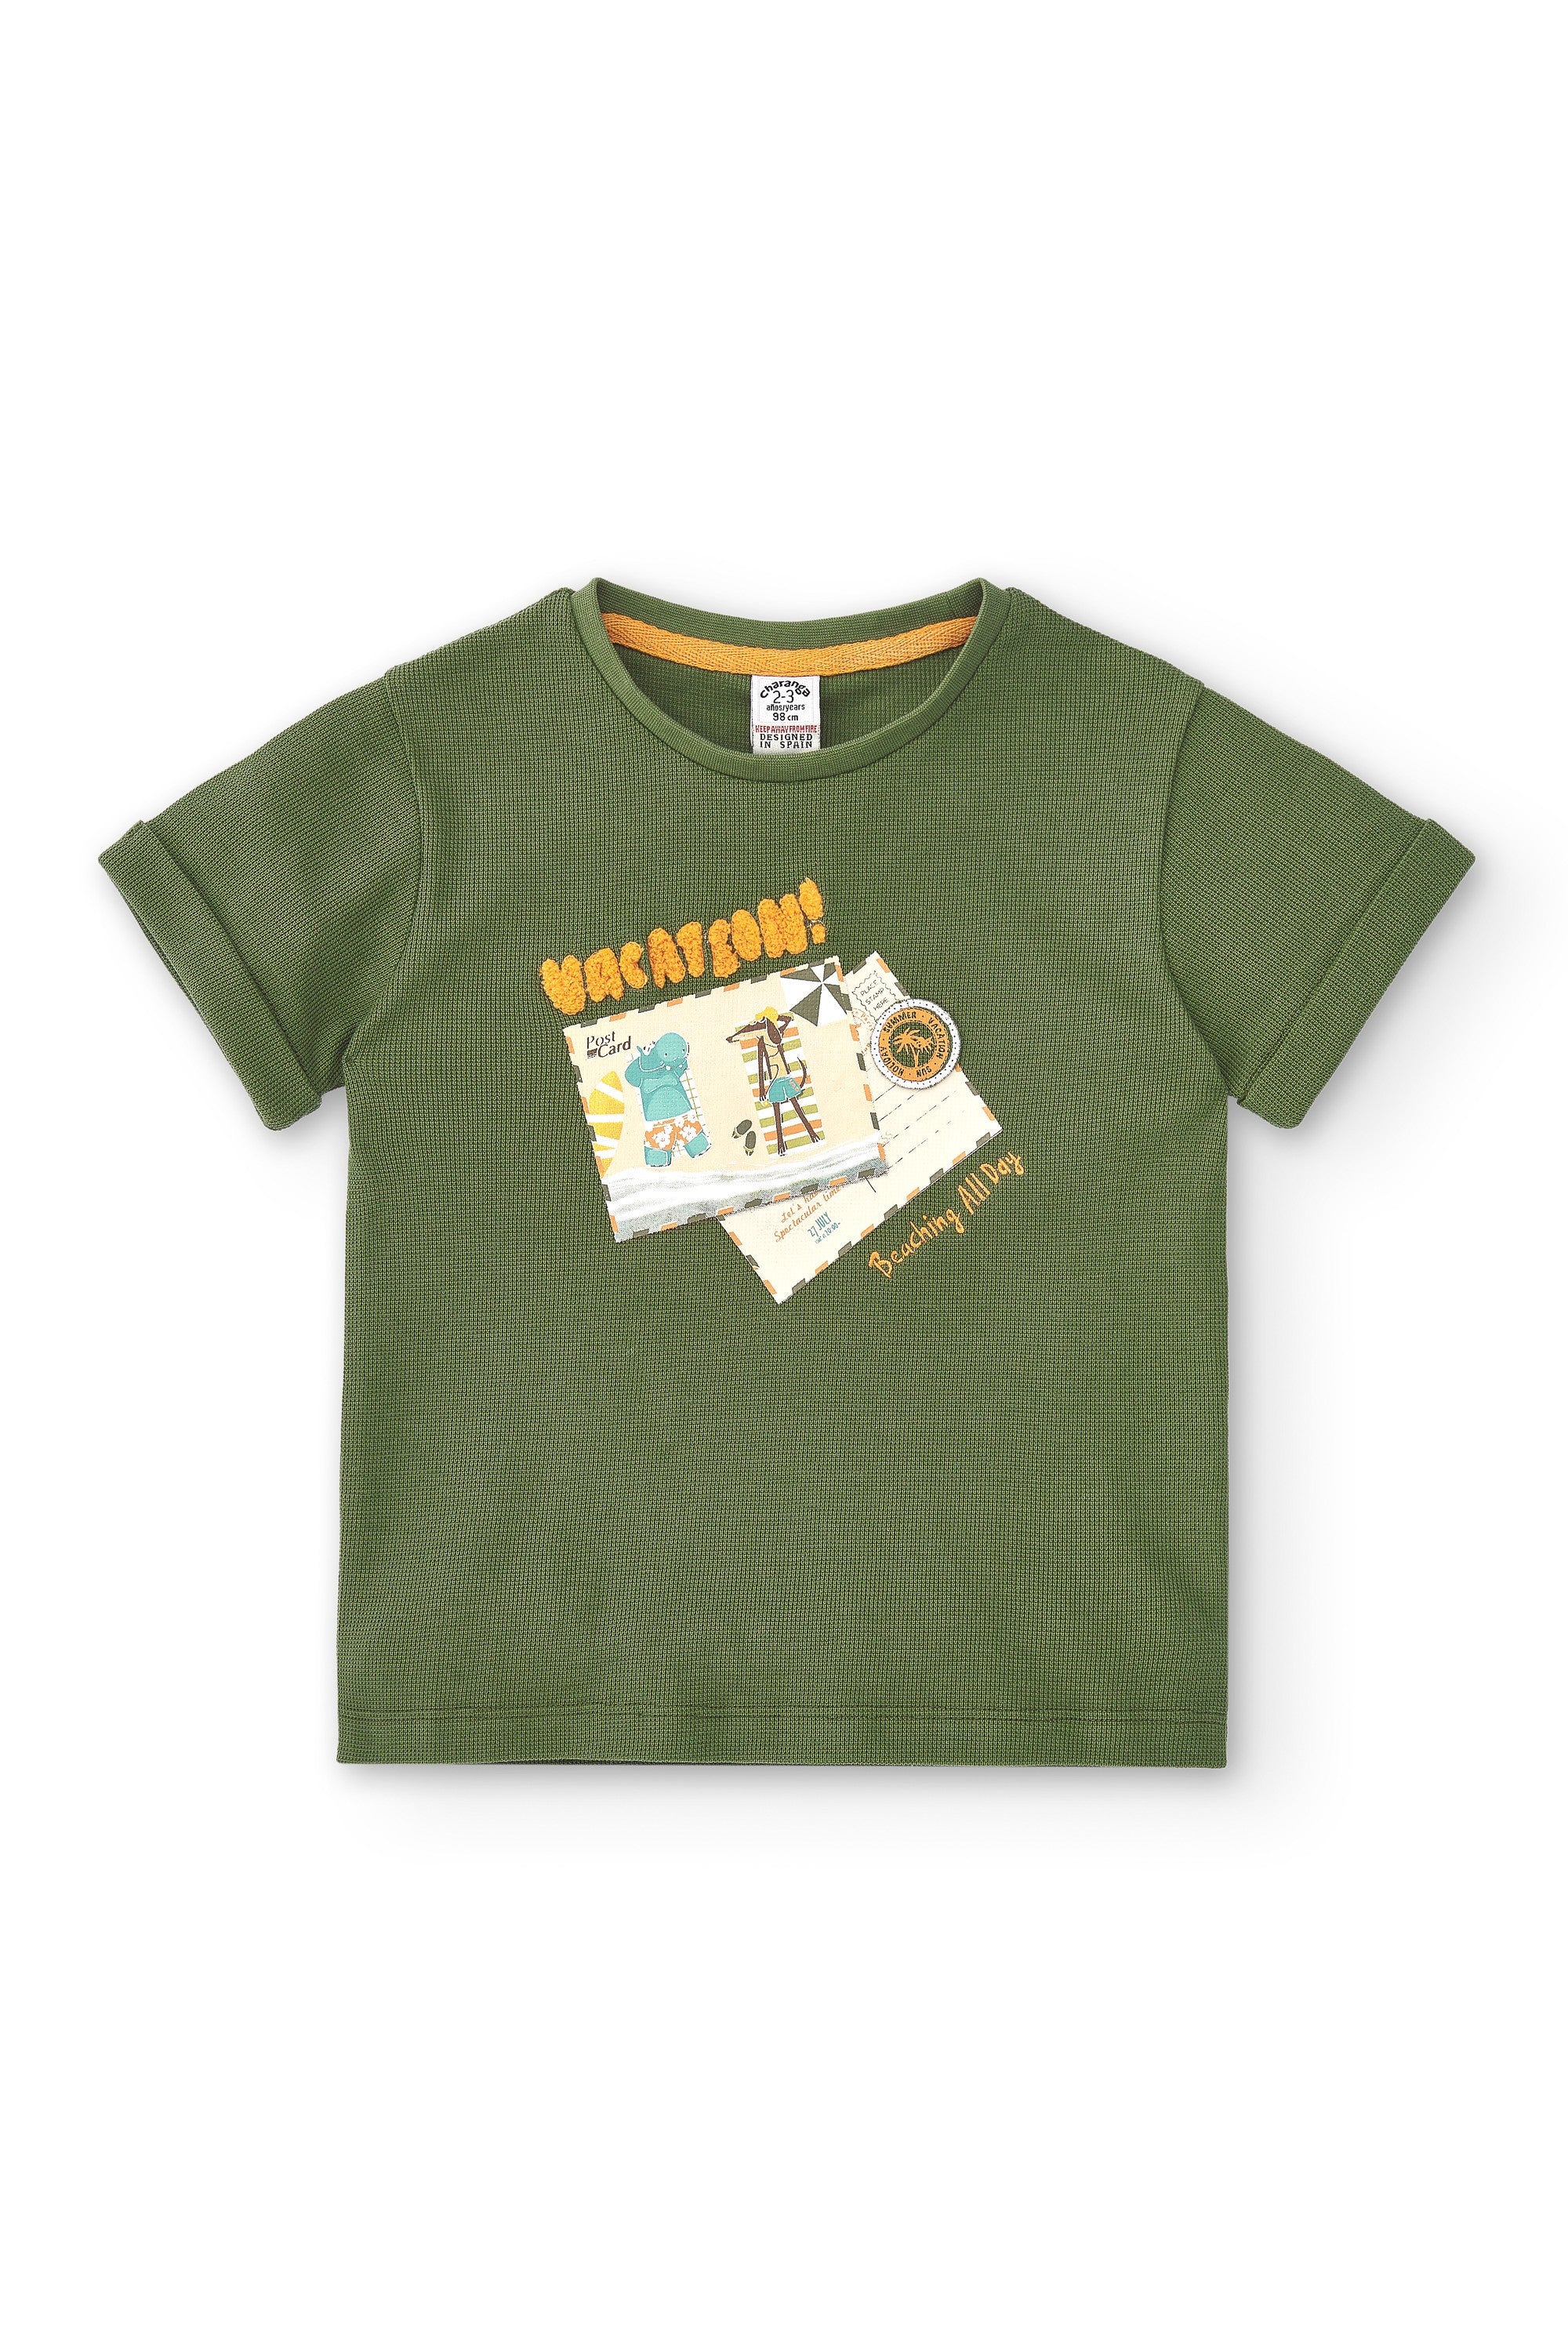 Camiseta de niño kaki VERANO/Outlet